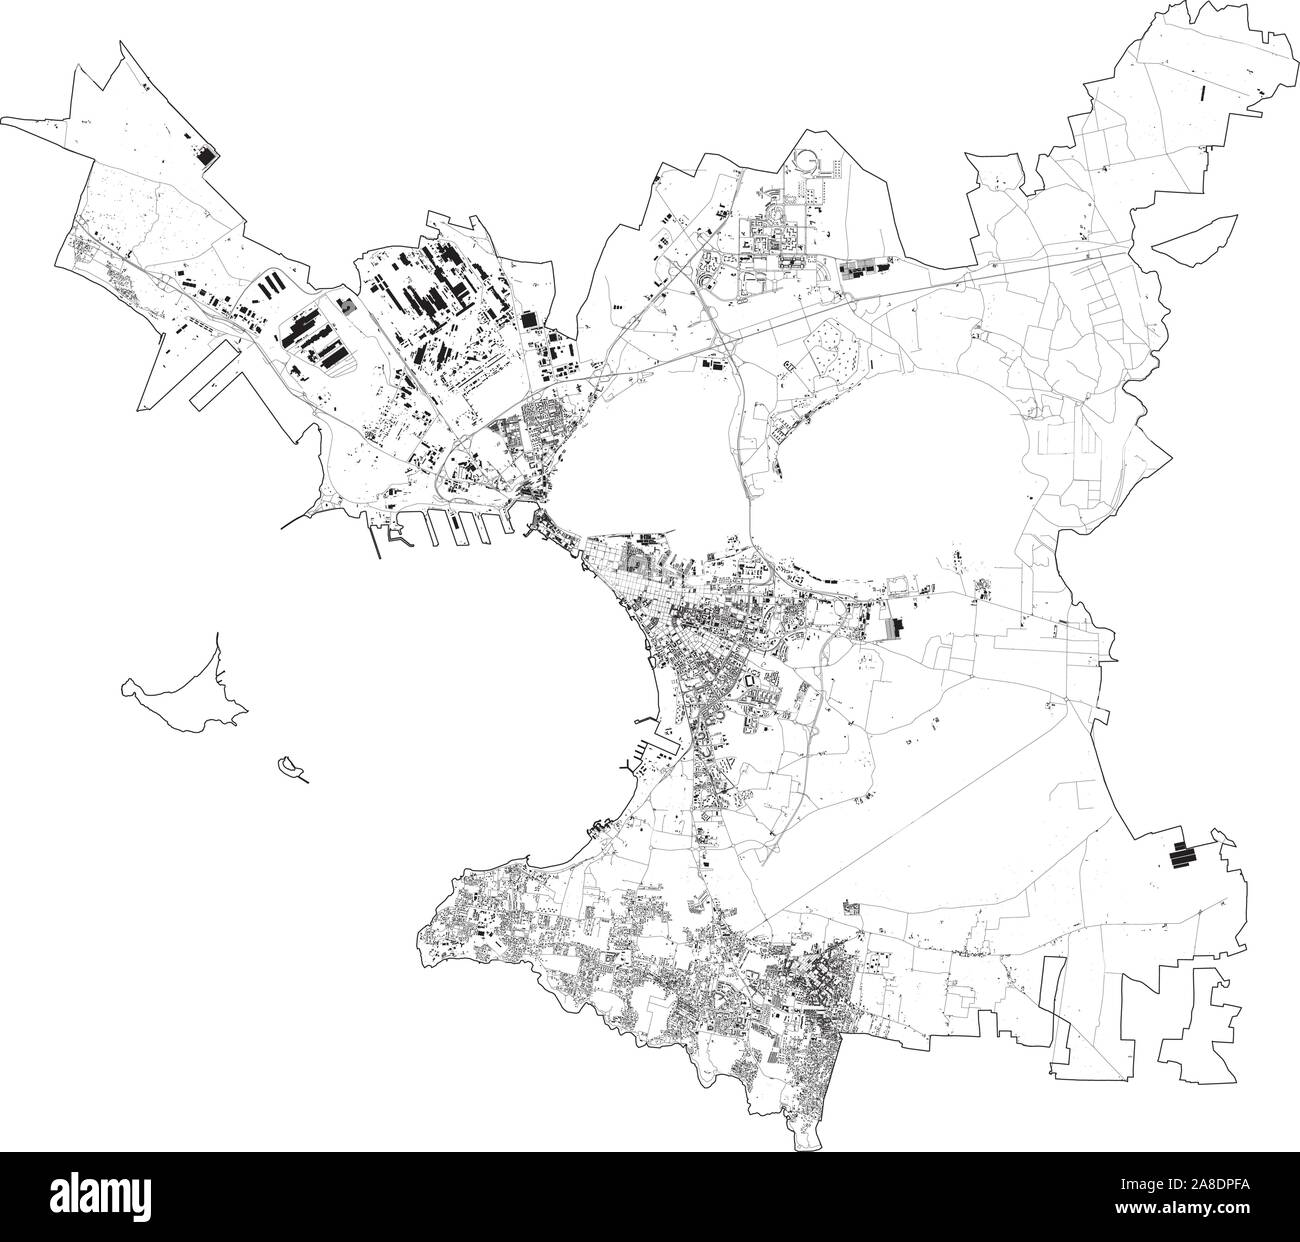 Satelliten Ansicht der Stadt von Taranto, Karte und Straßen. Apulien, Italien. Karte von Transporten in der Region Apulien, Italien. Ilva Stock Vektor